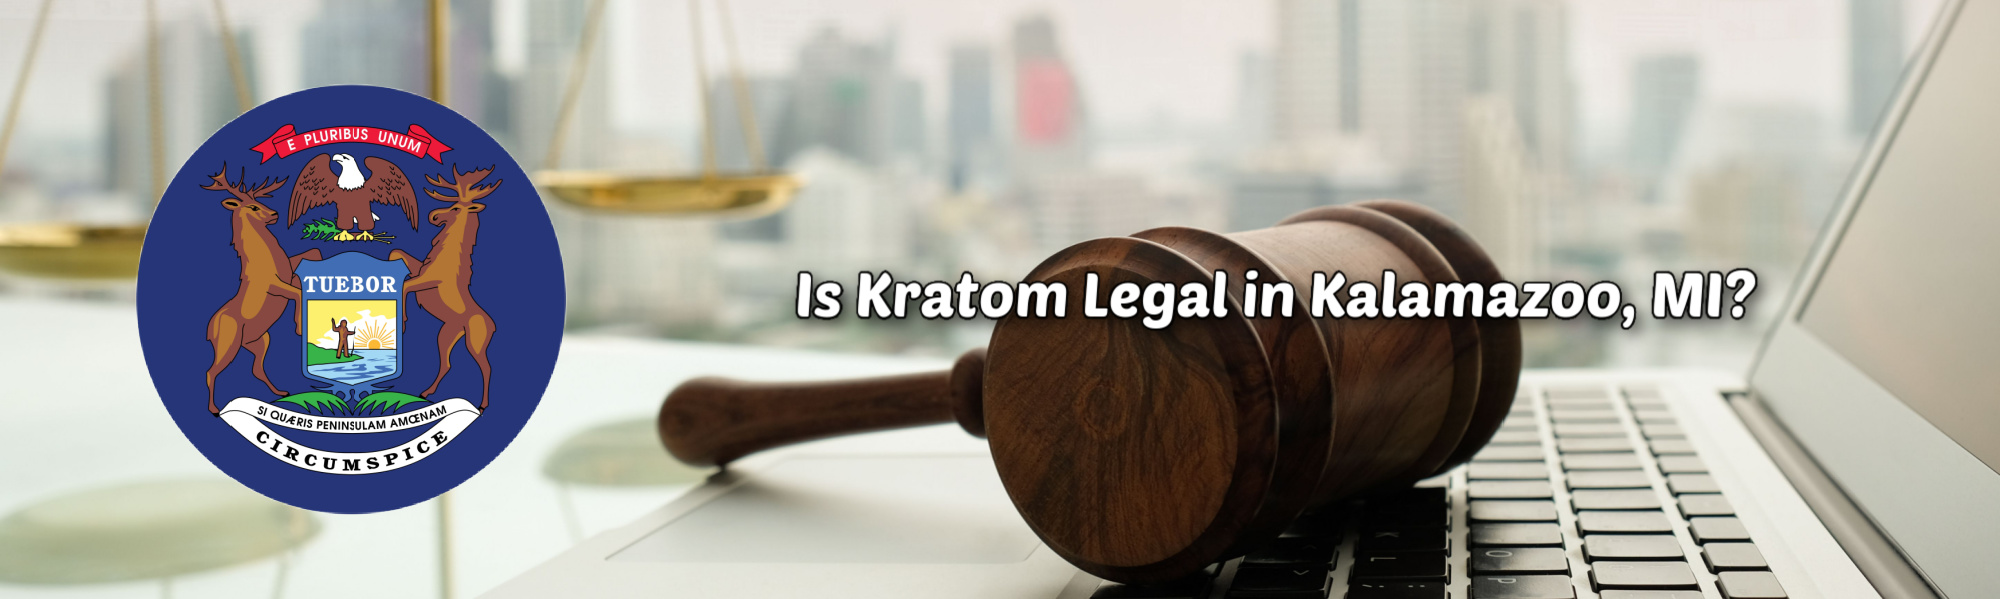 image of is kratom legal in kalamazoo mi